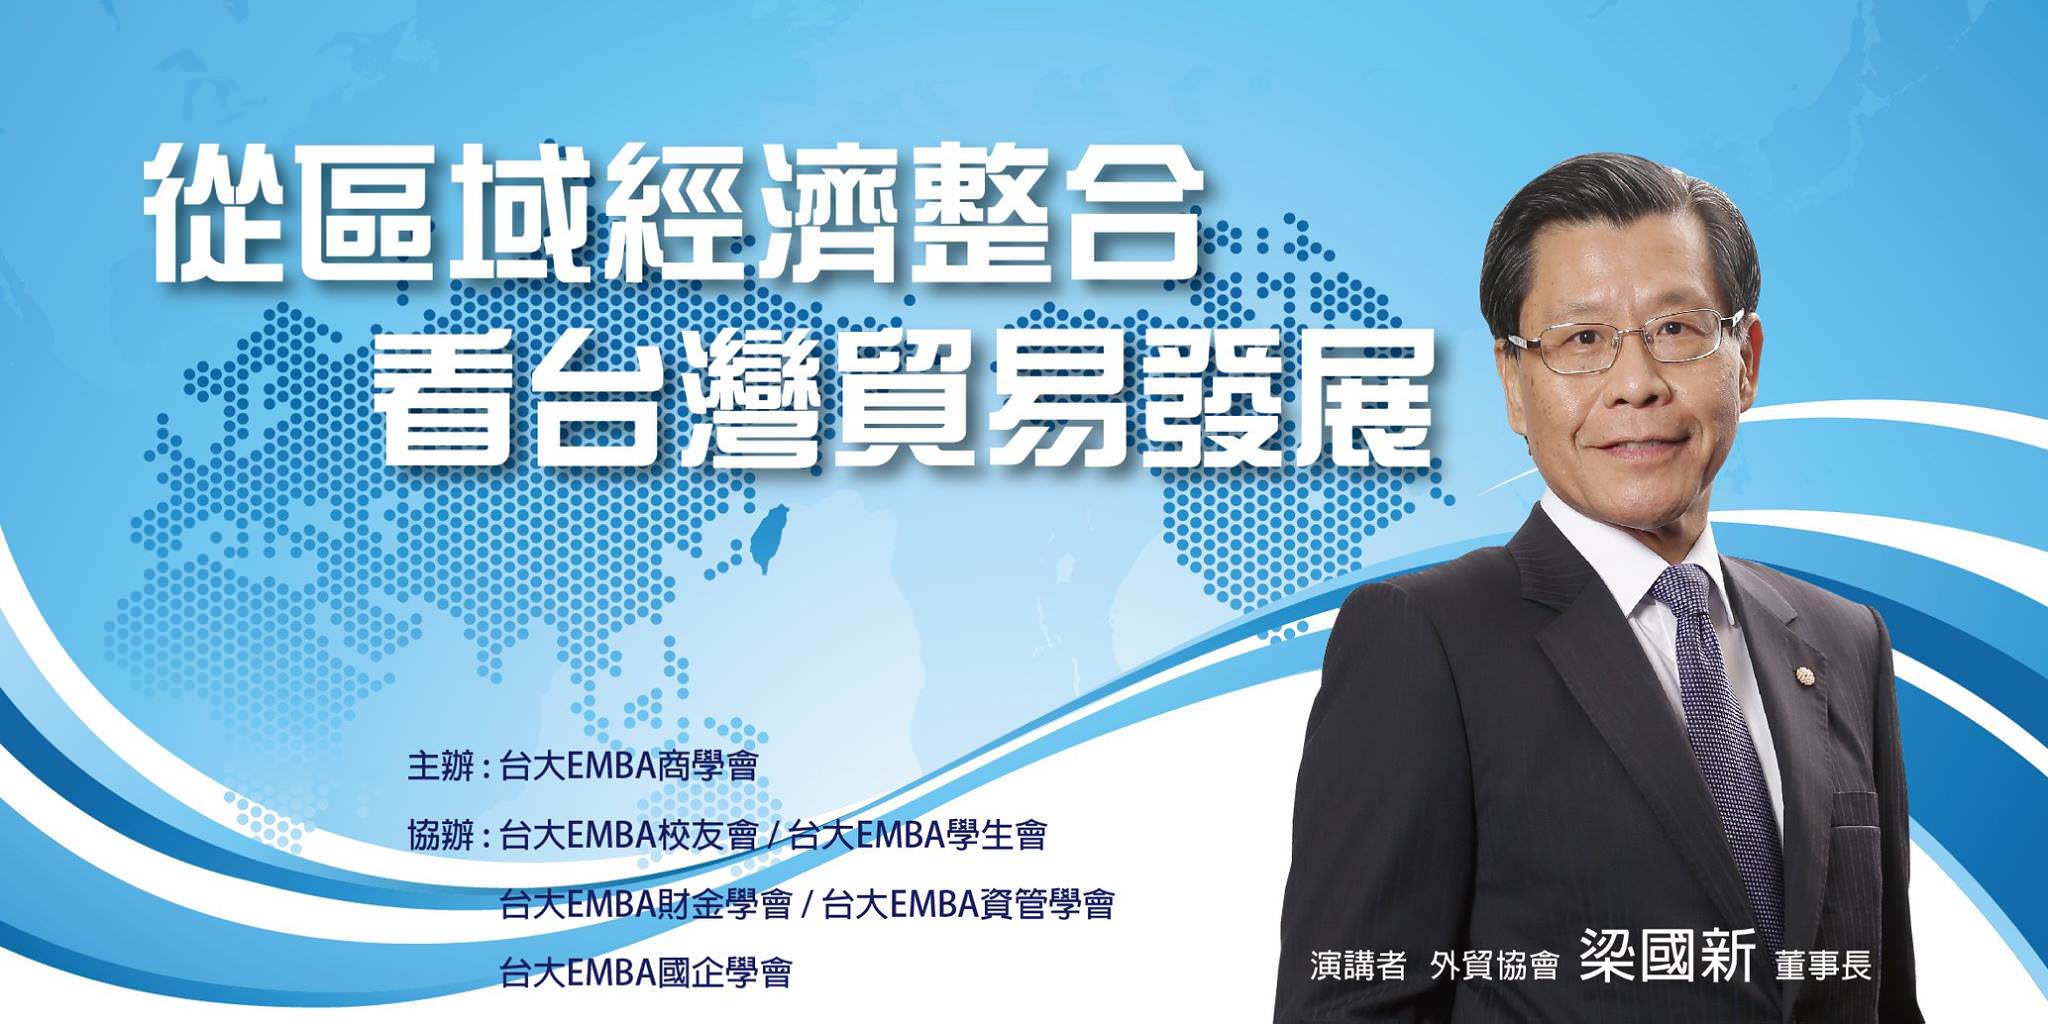 10/31(五)18:30 外貿協會梁國新董事長「從區域經濟整合看台灣貿易發展」演講，歡迎報名！